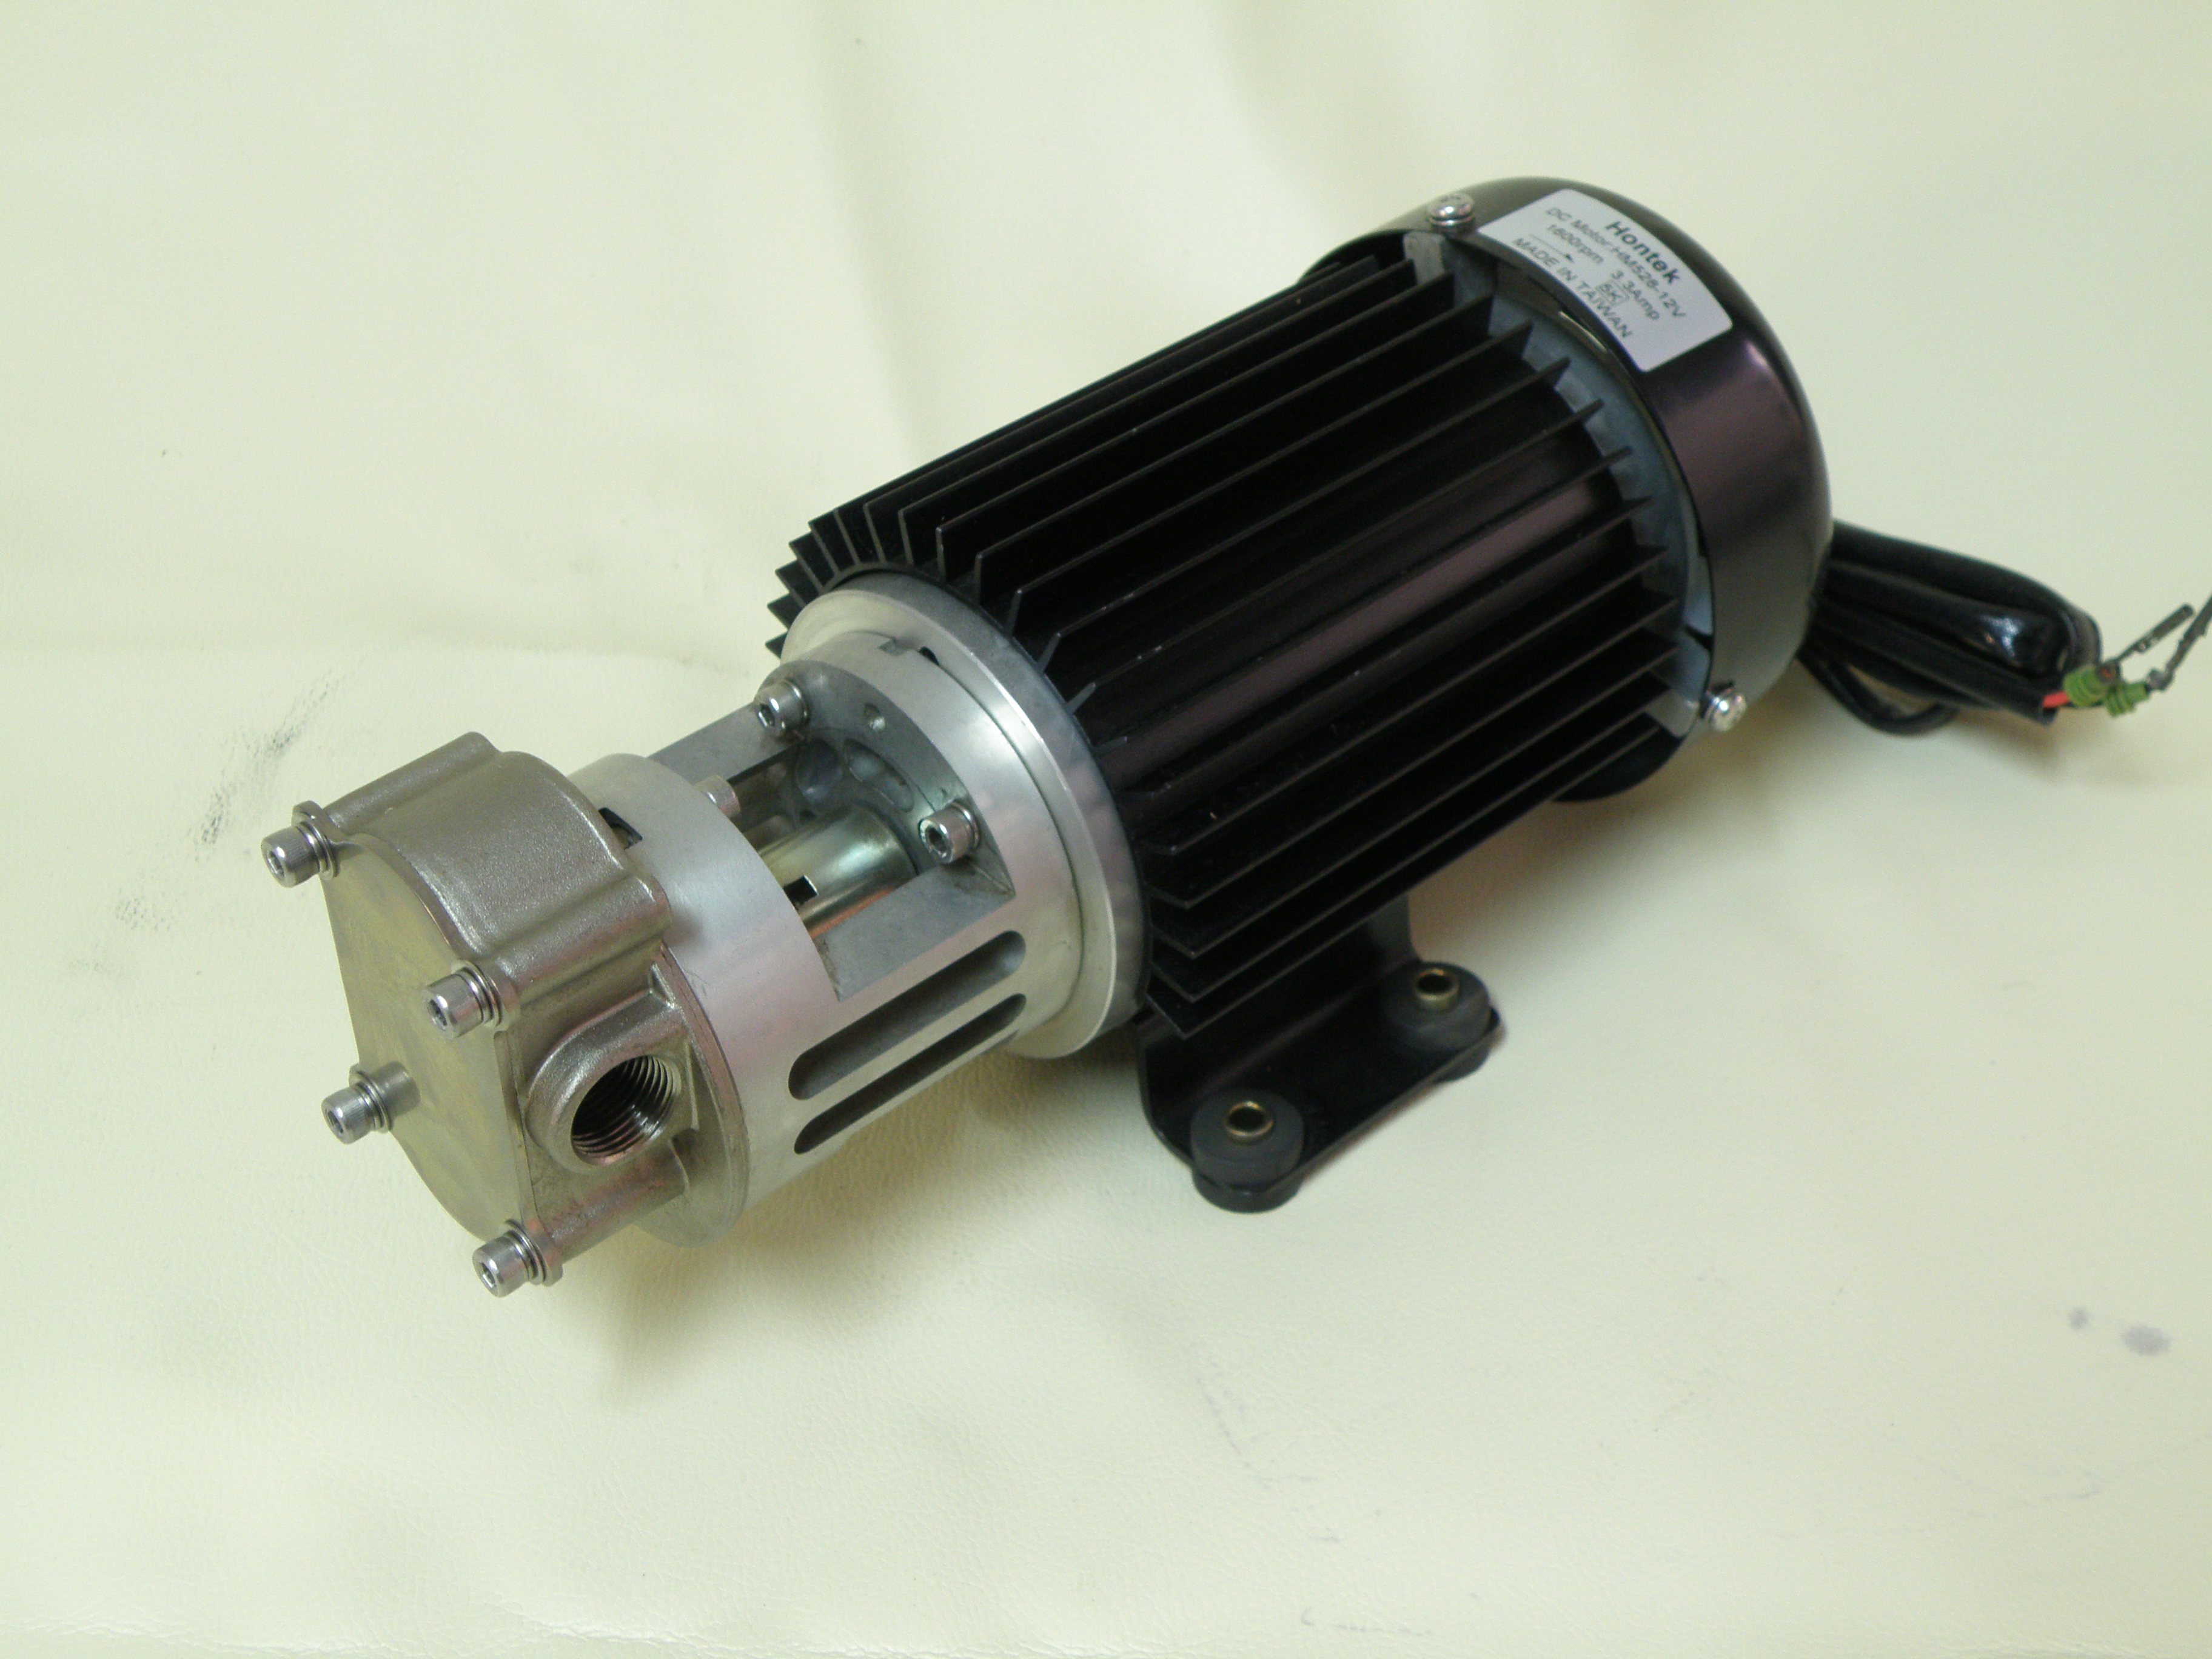 HP528-250°C Heat Exchanger Pump熱交換器用泵浦